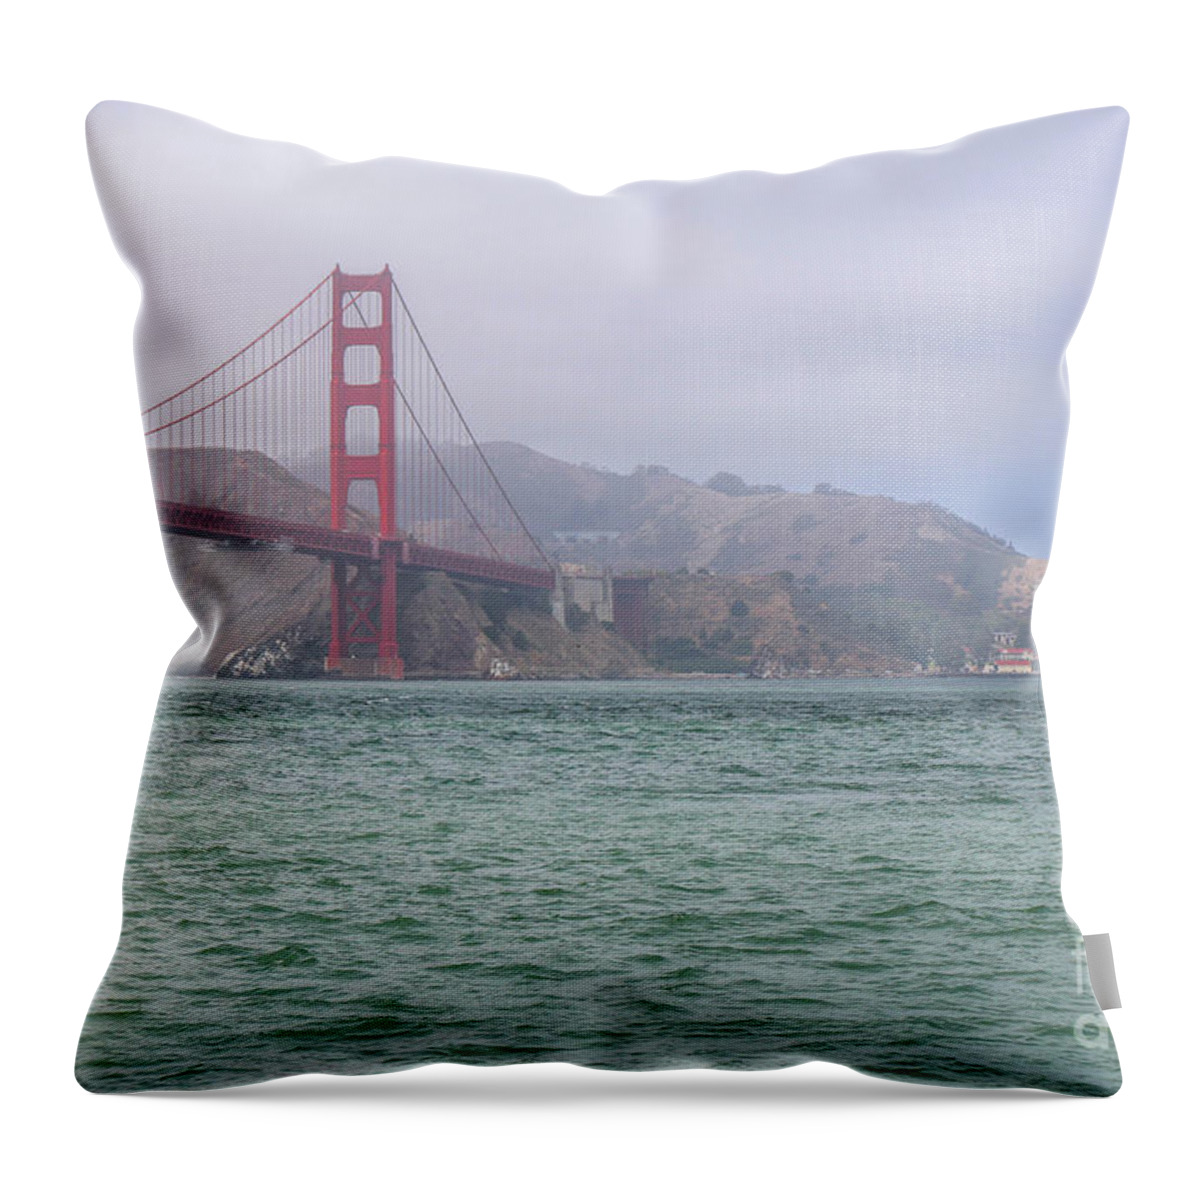 Golden Gate Bridge Throw Pillow featuring the photograph Golden Gate Bridge II by Veronica Batterson